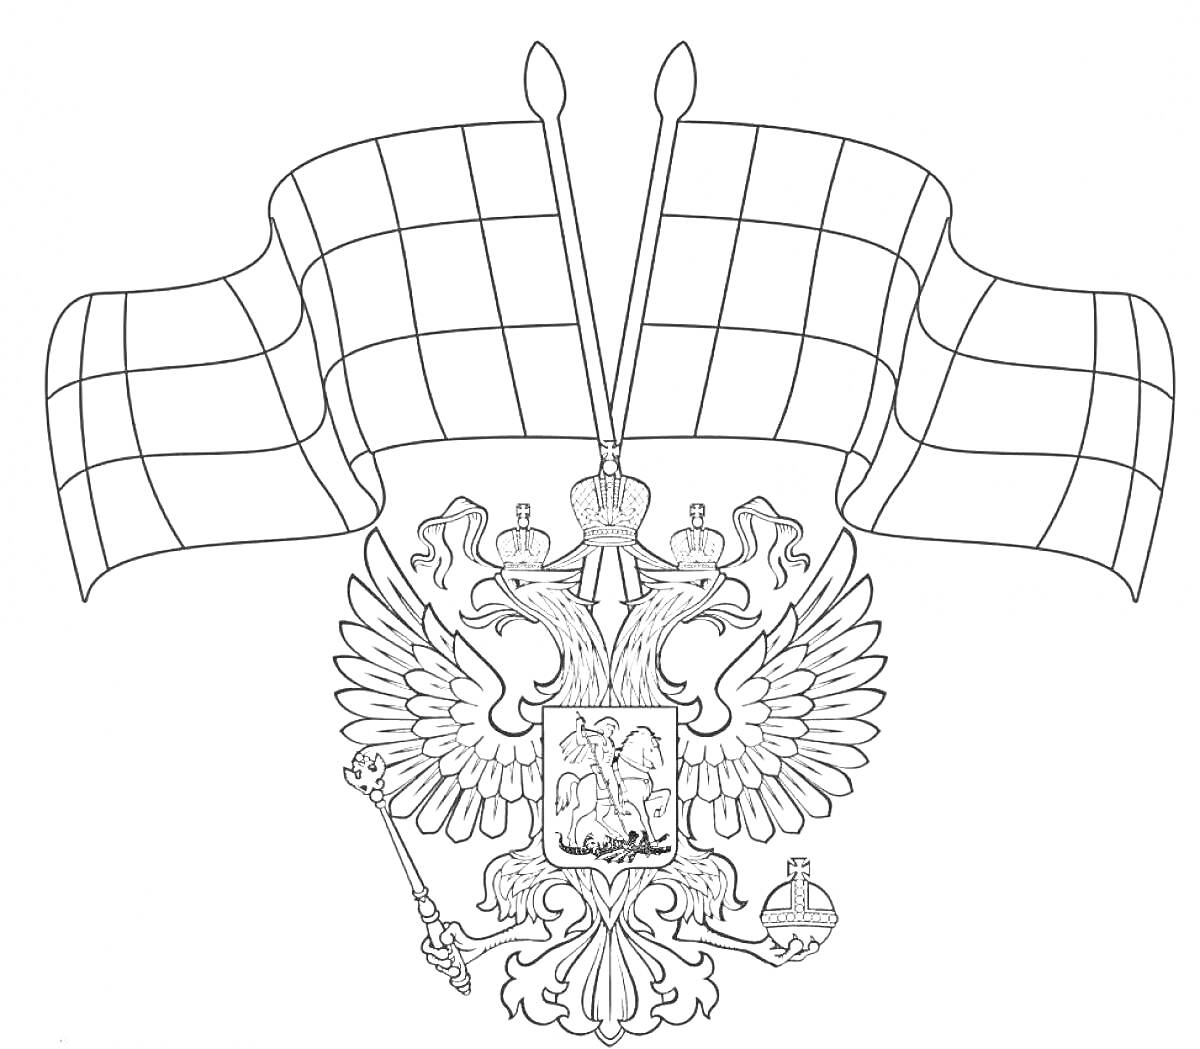 Раскраска Герб России с двумя флагами, двуглавым орлом, сидящем всадником, державой, скипетром и коронами